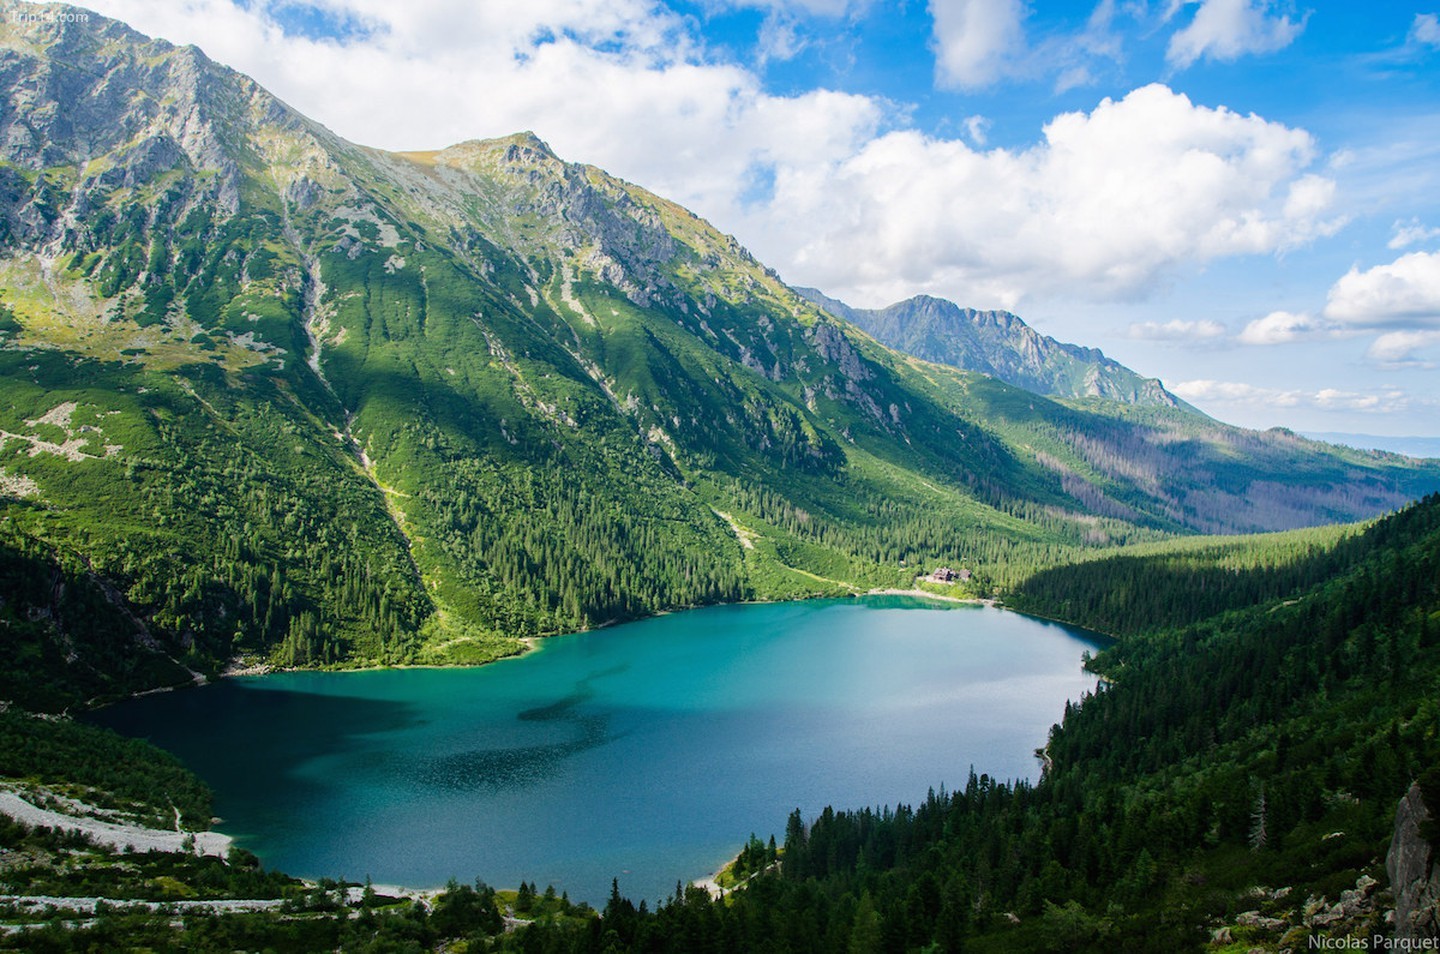 Hồ này lớn nhất ở Tatras với chiều dài 862 mét